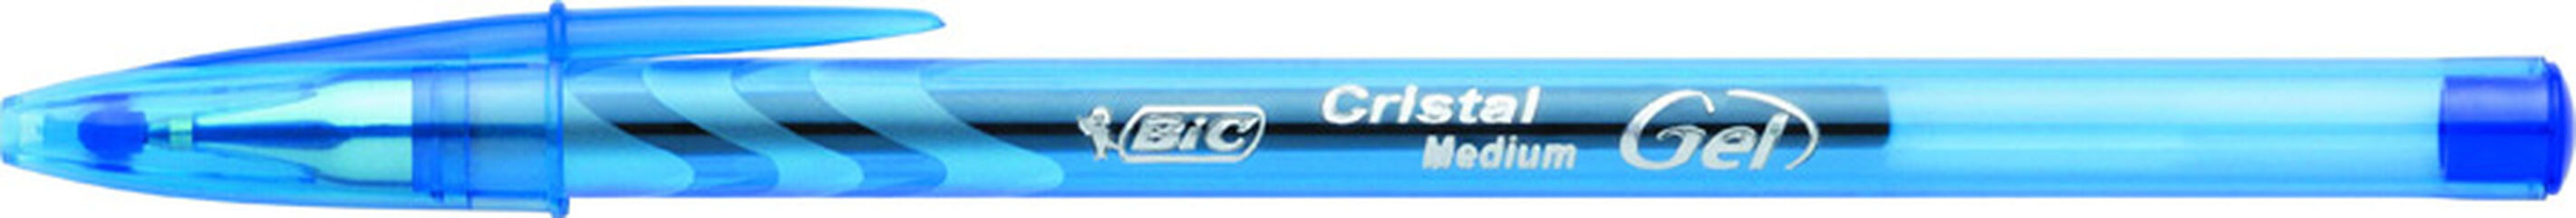 Bolígrafo Roller Bic Cristal Gel Blau -20 unidades